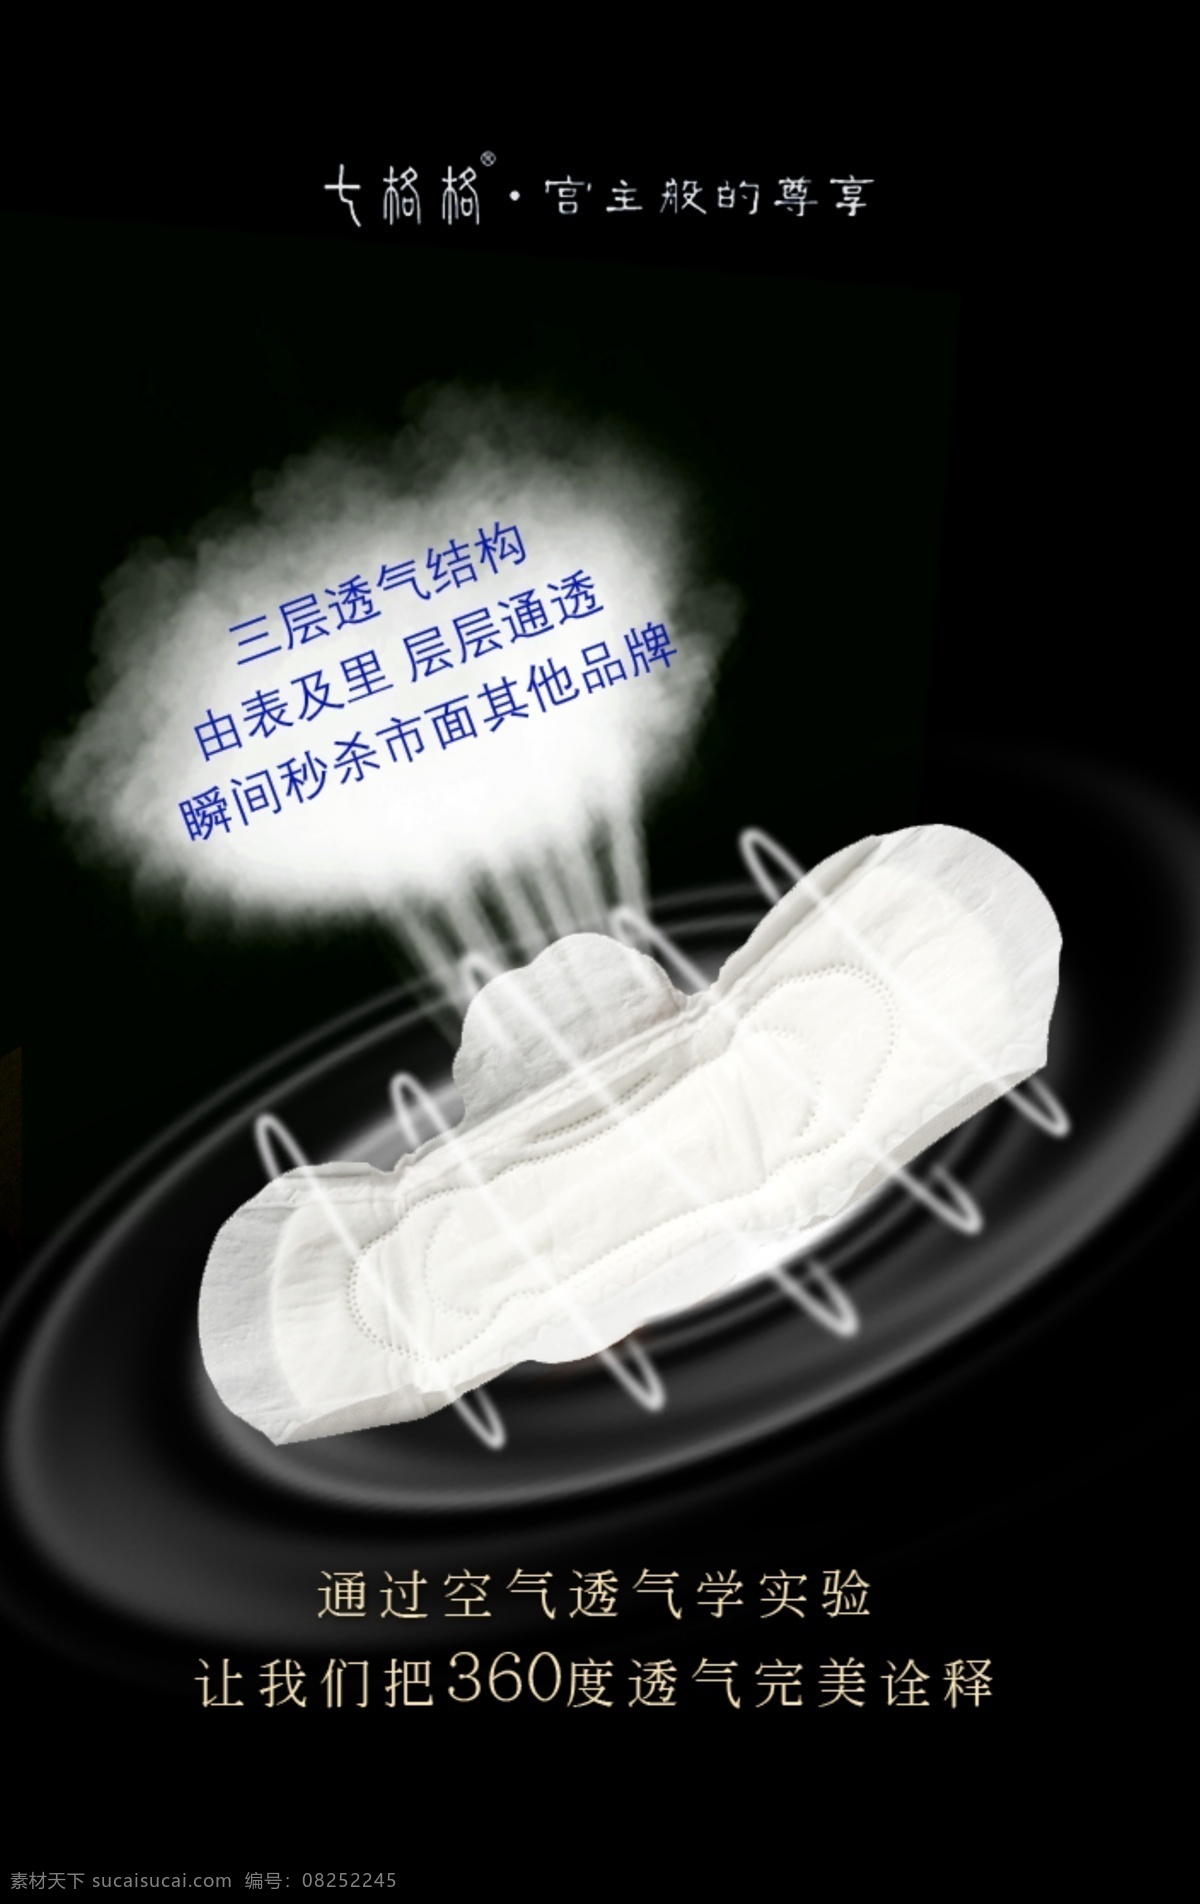 睿 沐 七 格格 系列 卫生巾 睿沐 七格格 产品 宣传 海报 烟 透气